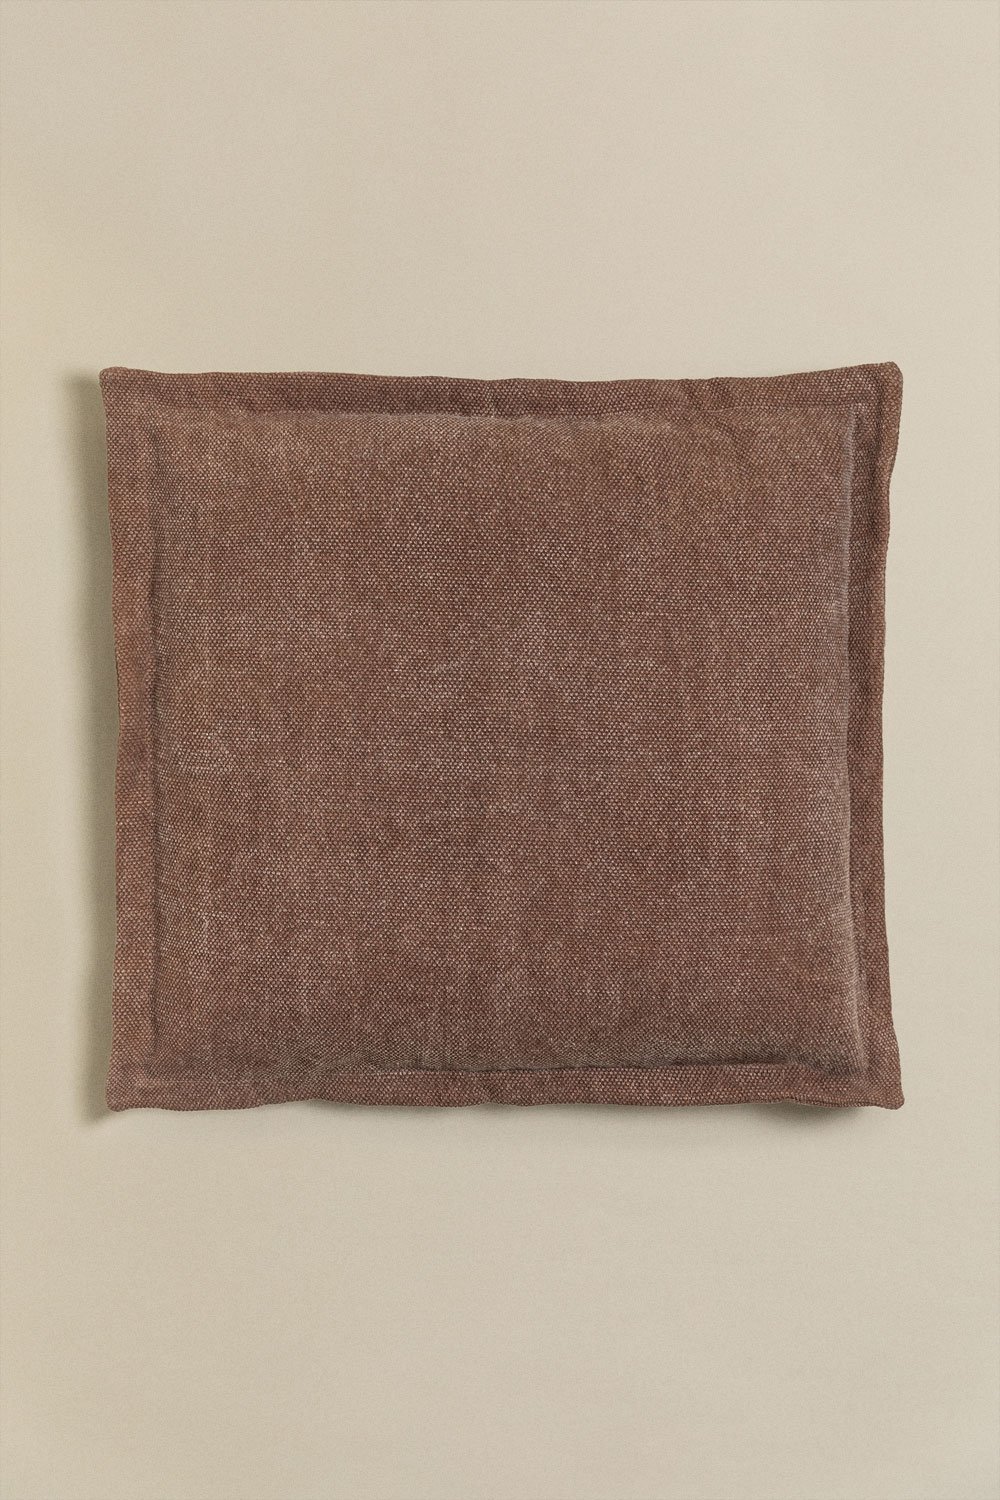 Cuscino quadrato in cotone (60x60 cm) Karzem, immagine della galleria 1